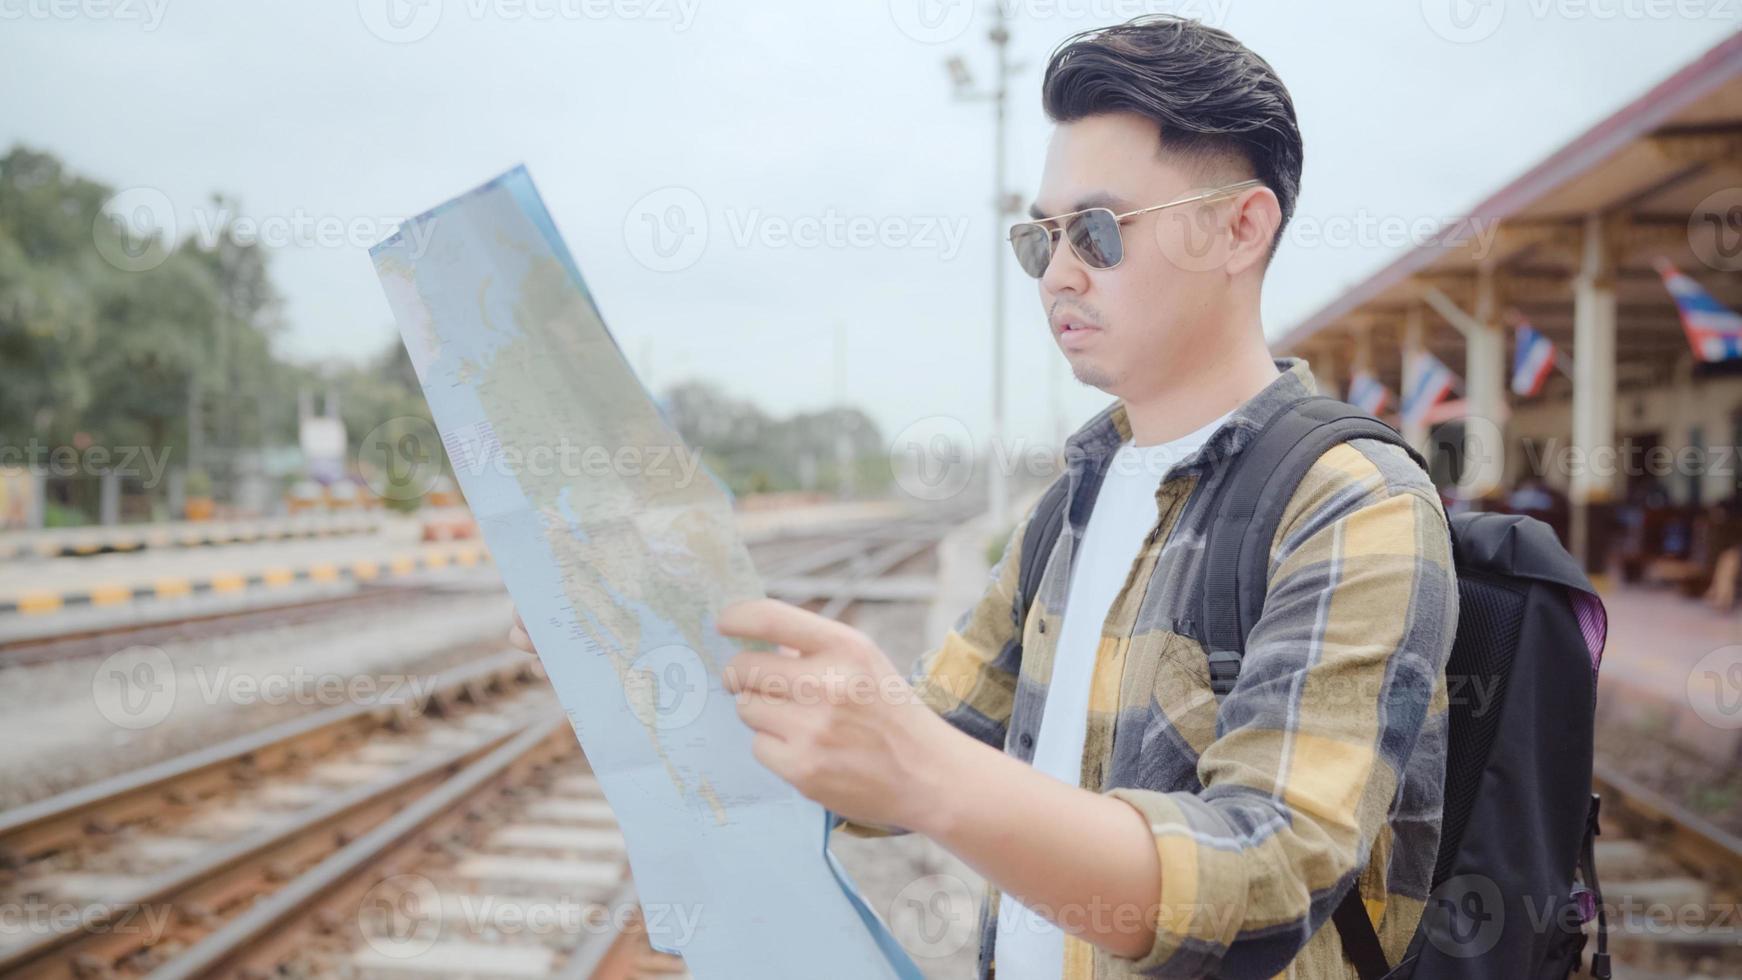 richting van de reiziger aziatische man en kijkend op de locatiekaart terwijl hij een vakantiereis doorbrengt en op de trein wacht op het treinstation, jonge mannelijke toeristische backpacker geniet van de reis. levensstijl mannen reizen concept. foto